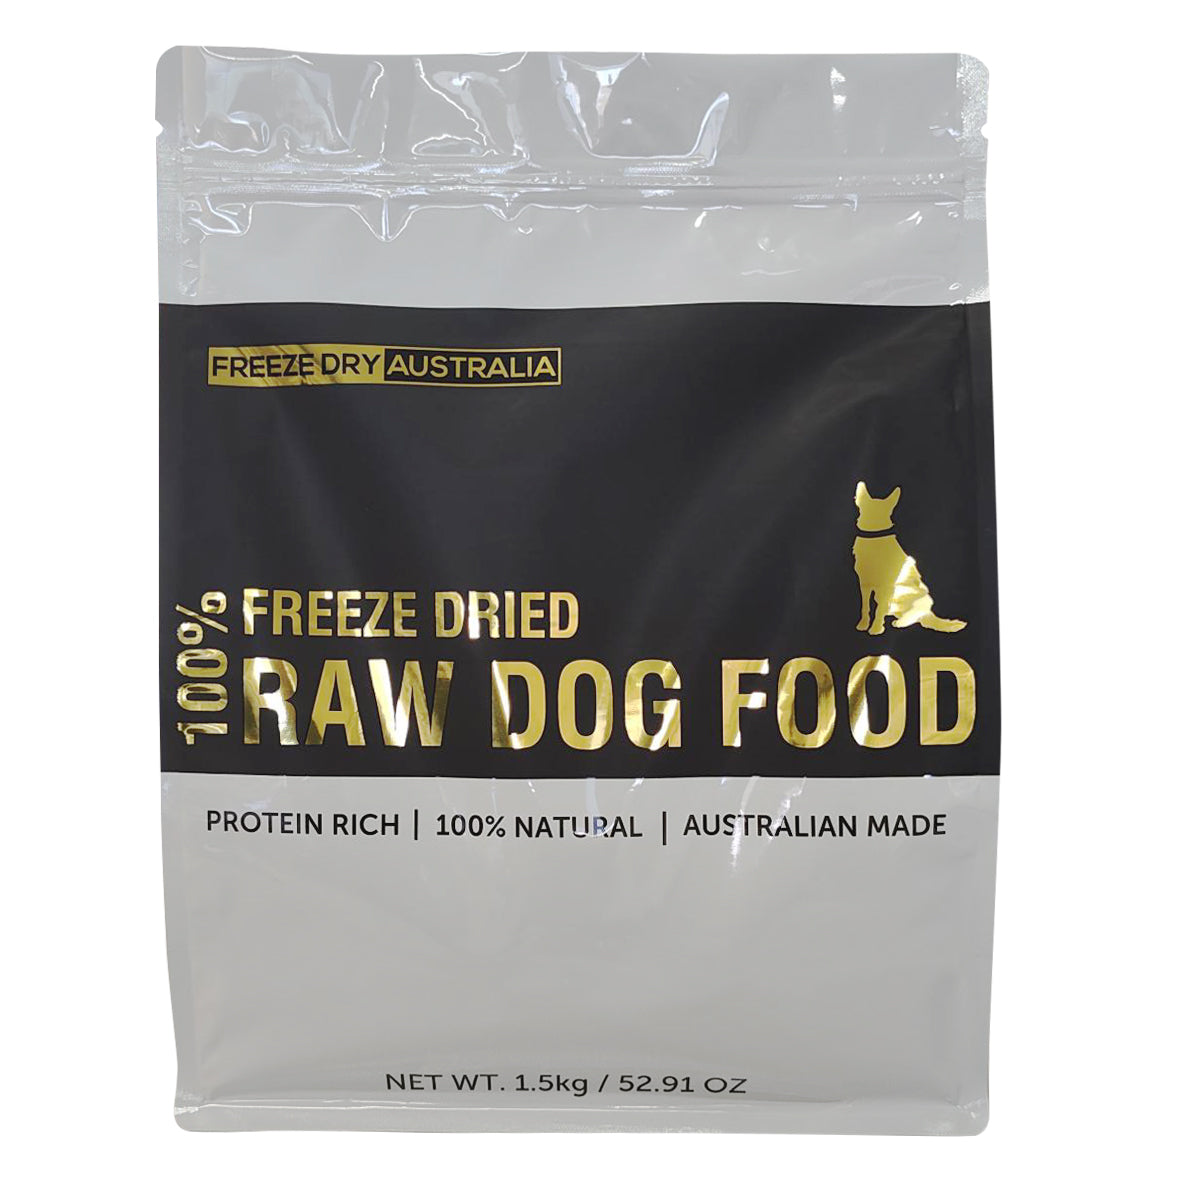 Freeze Dry Australia Freeze Dried Raw Dog Food